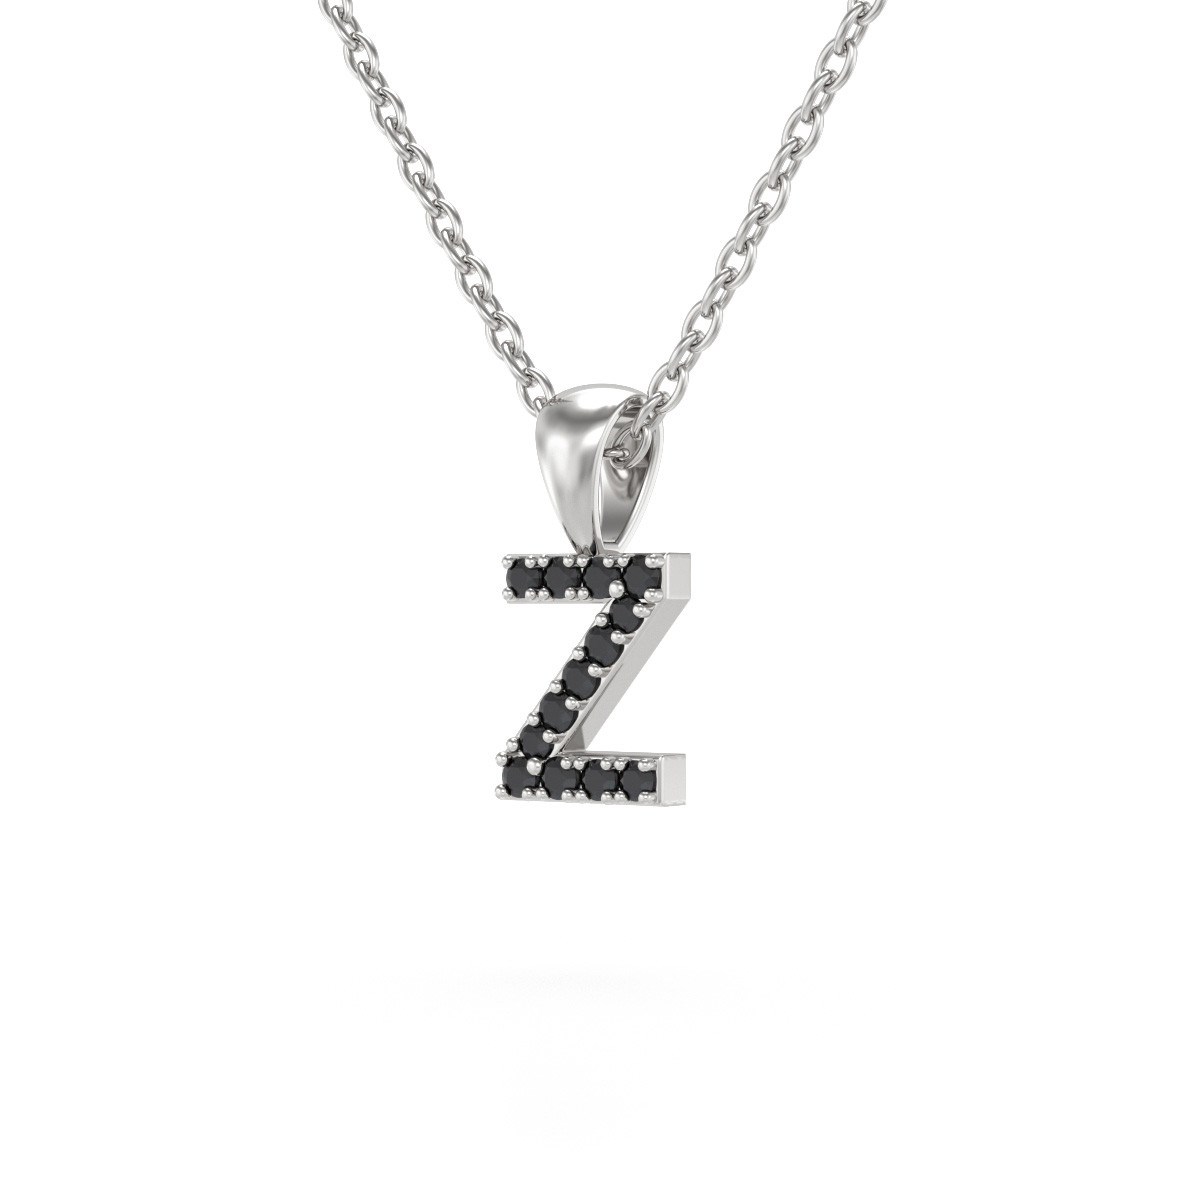 Collier Pendentif ADEN Lettre Z Or 750 Blanc Diamant Noir Chaine Or 750 incluse 0.72grs - vue 3